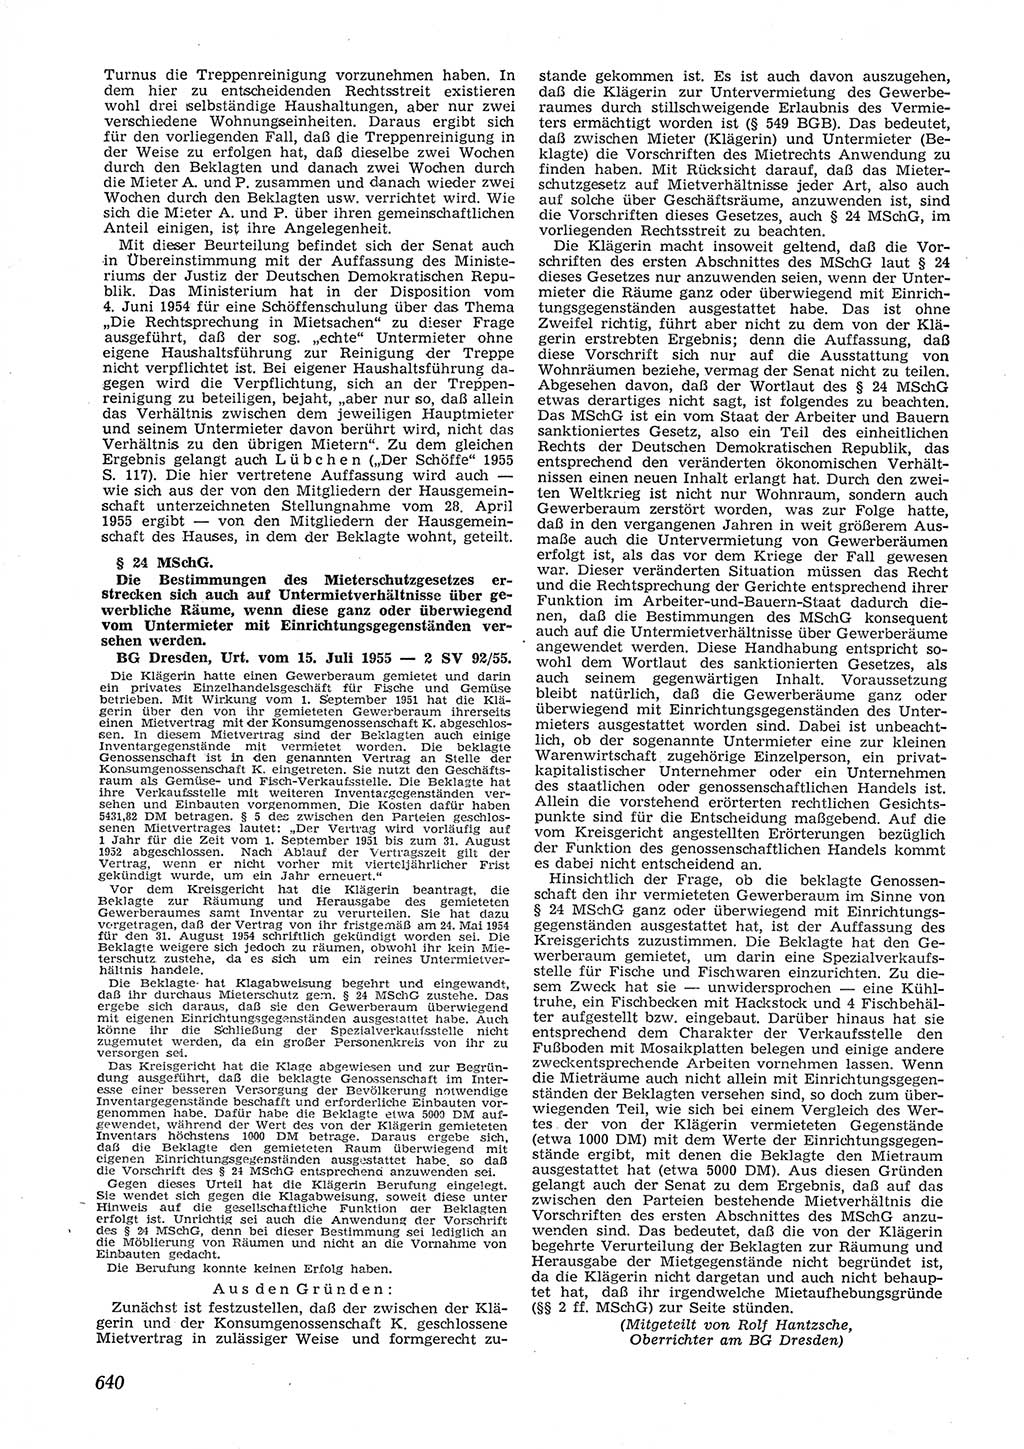 Neue Justiz (NJ), Zeitschrift für Recht und Rechtswissenschaft [Deutsche Demokratische Republik (DDR)], 9. Jahrgang 1955, Seite 640 (NJ DDR 1955, S. 640)